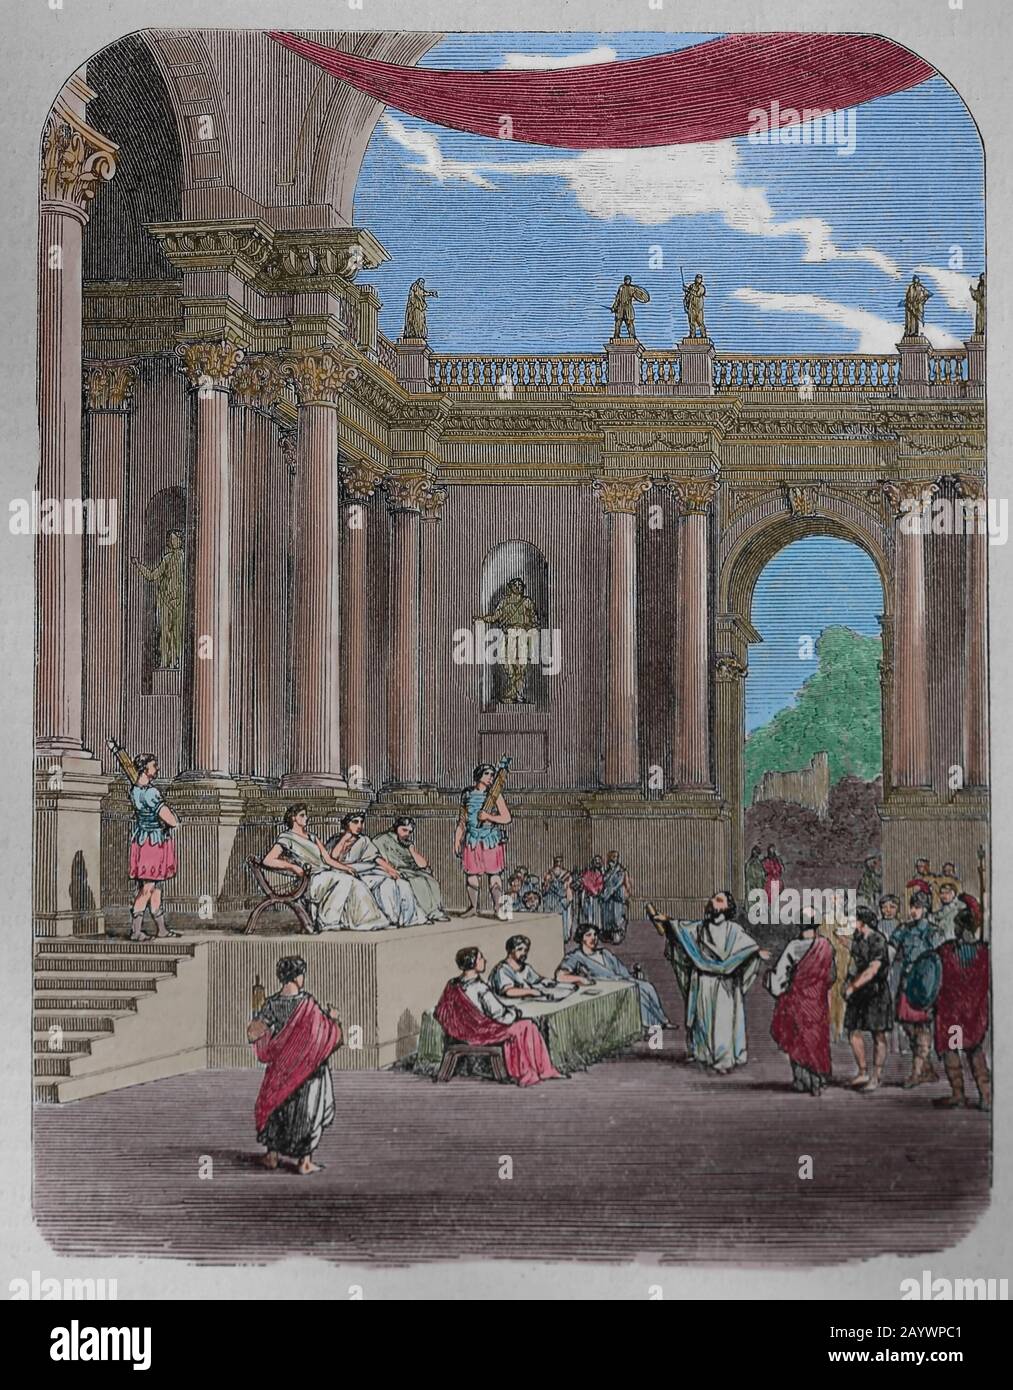 Pilates-Gericht oder römisches Prätorium. Jerusalem. Gravur, 19. Jahrhundert. Neues Testamente. Stockfoto